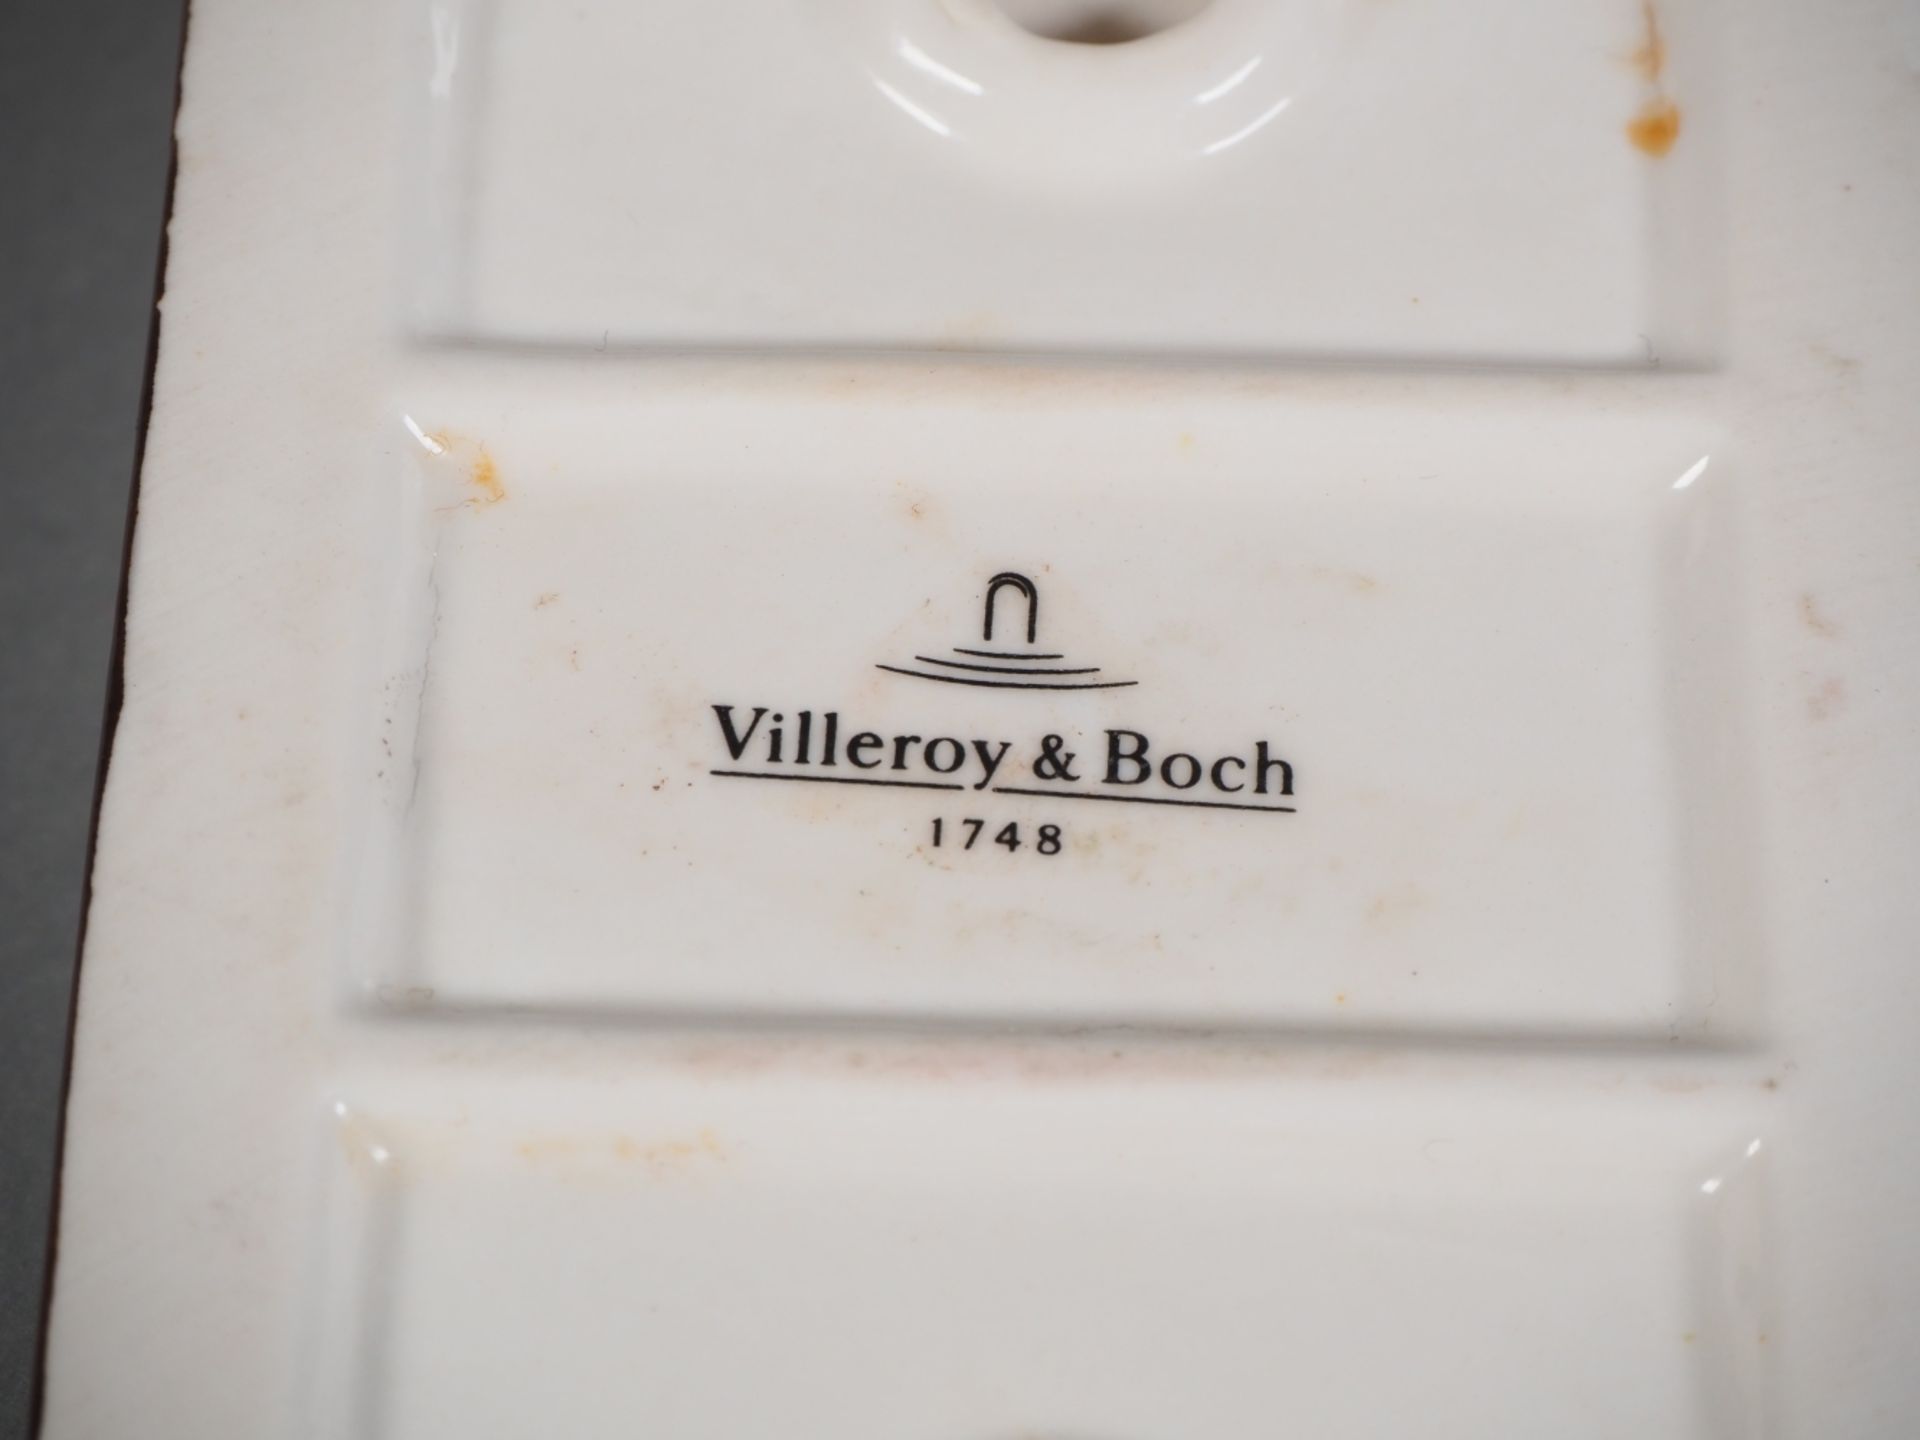 Villeroy & Boch, Teelichthalter Schlitten, 20. Jh. - Bild 4 aus 4